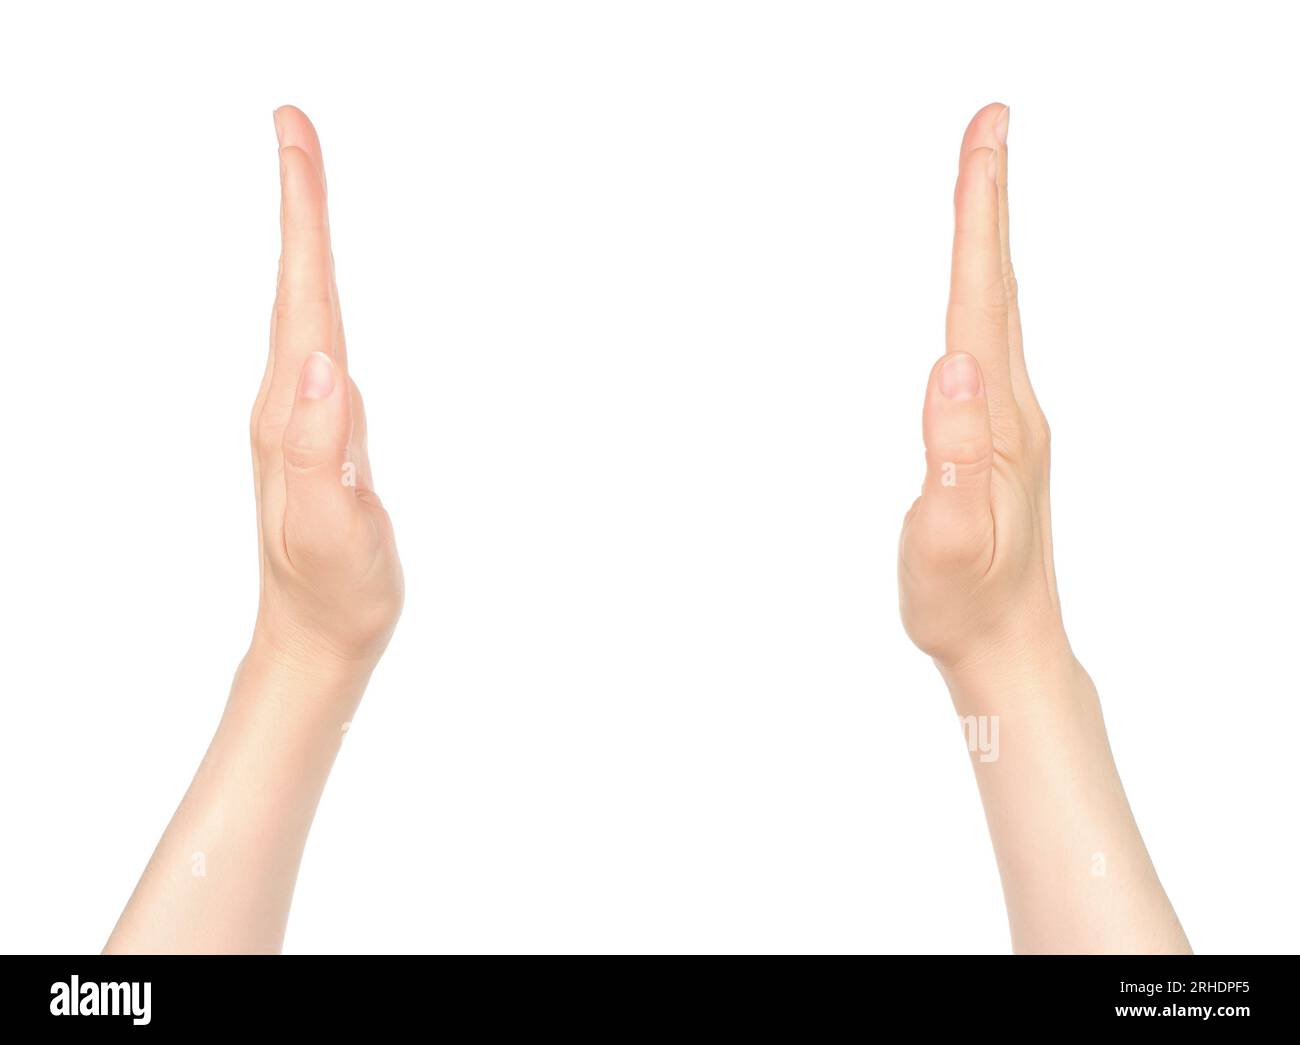 Le mani delle donne mostrano qualcosa in mano virtuale, su sfondo bianco in primo piano Foto Stock